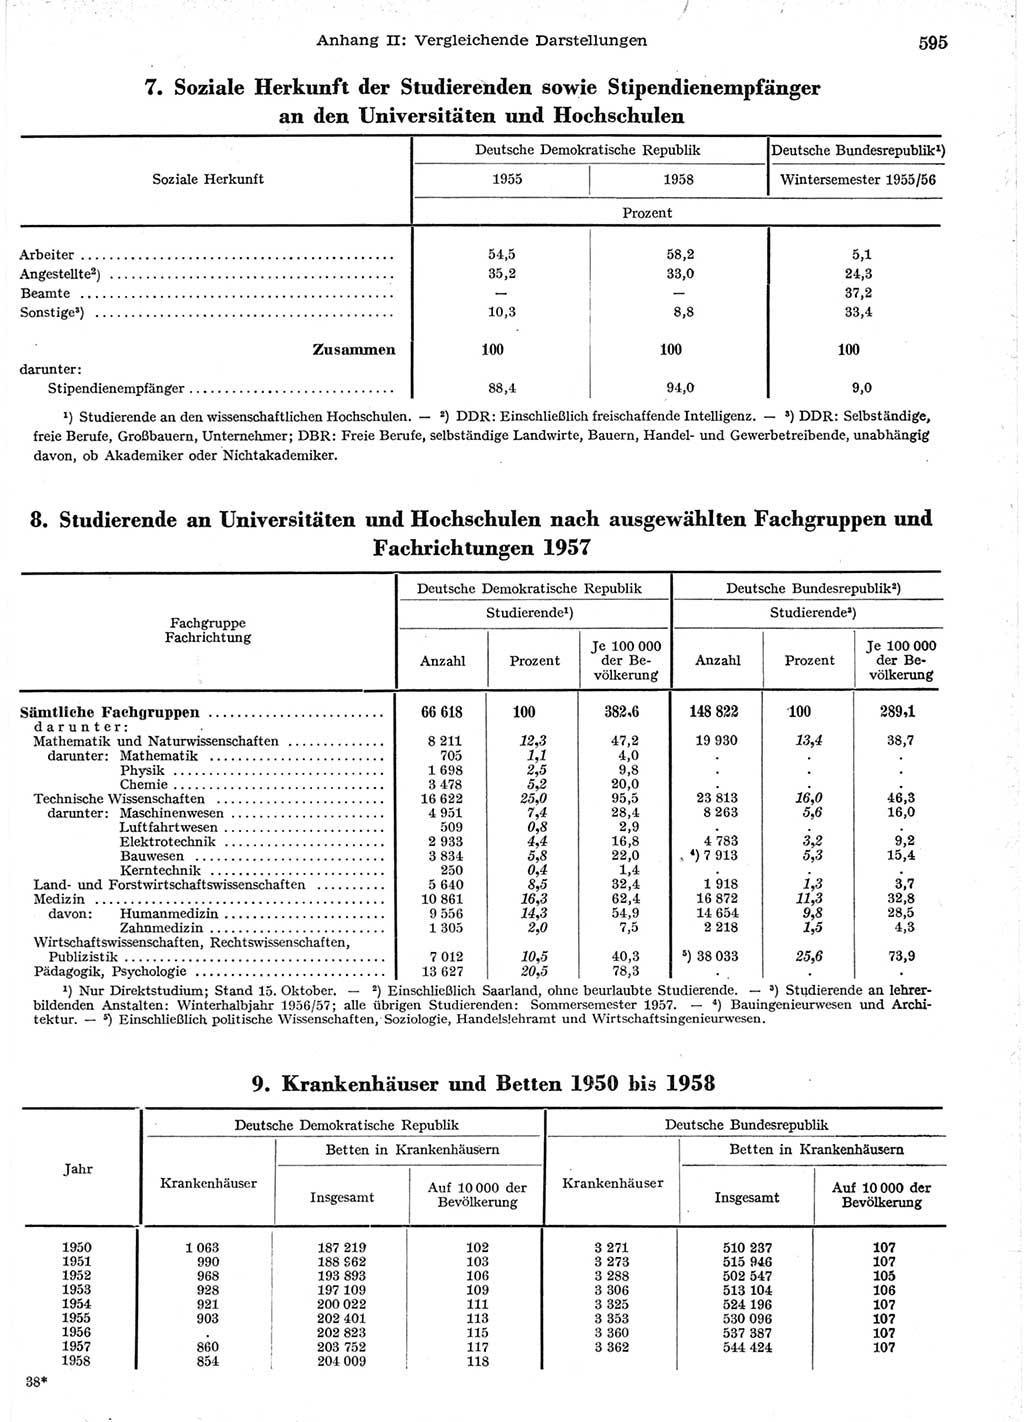 Statistisches Jahrbuch der Deutschen Demokratischen Republik (DDR) 1958, Seite 595 (Stat. Jb. DDR 1958, S. 595)